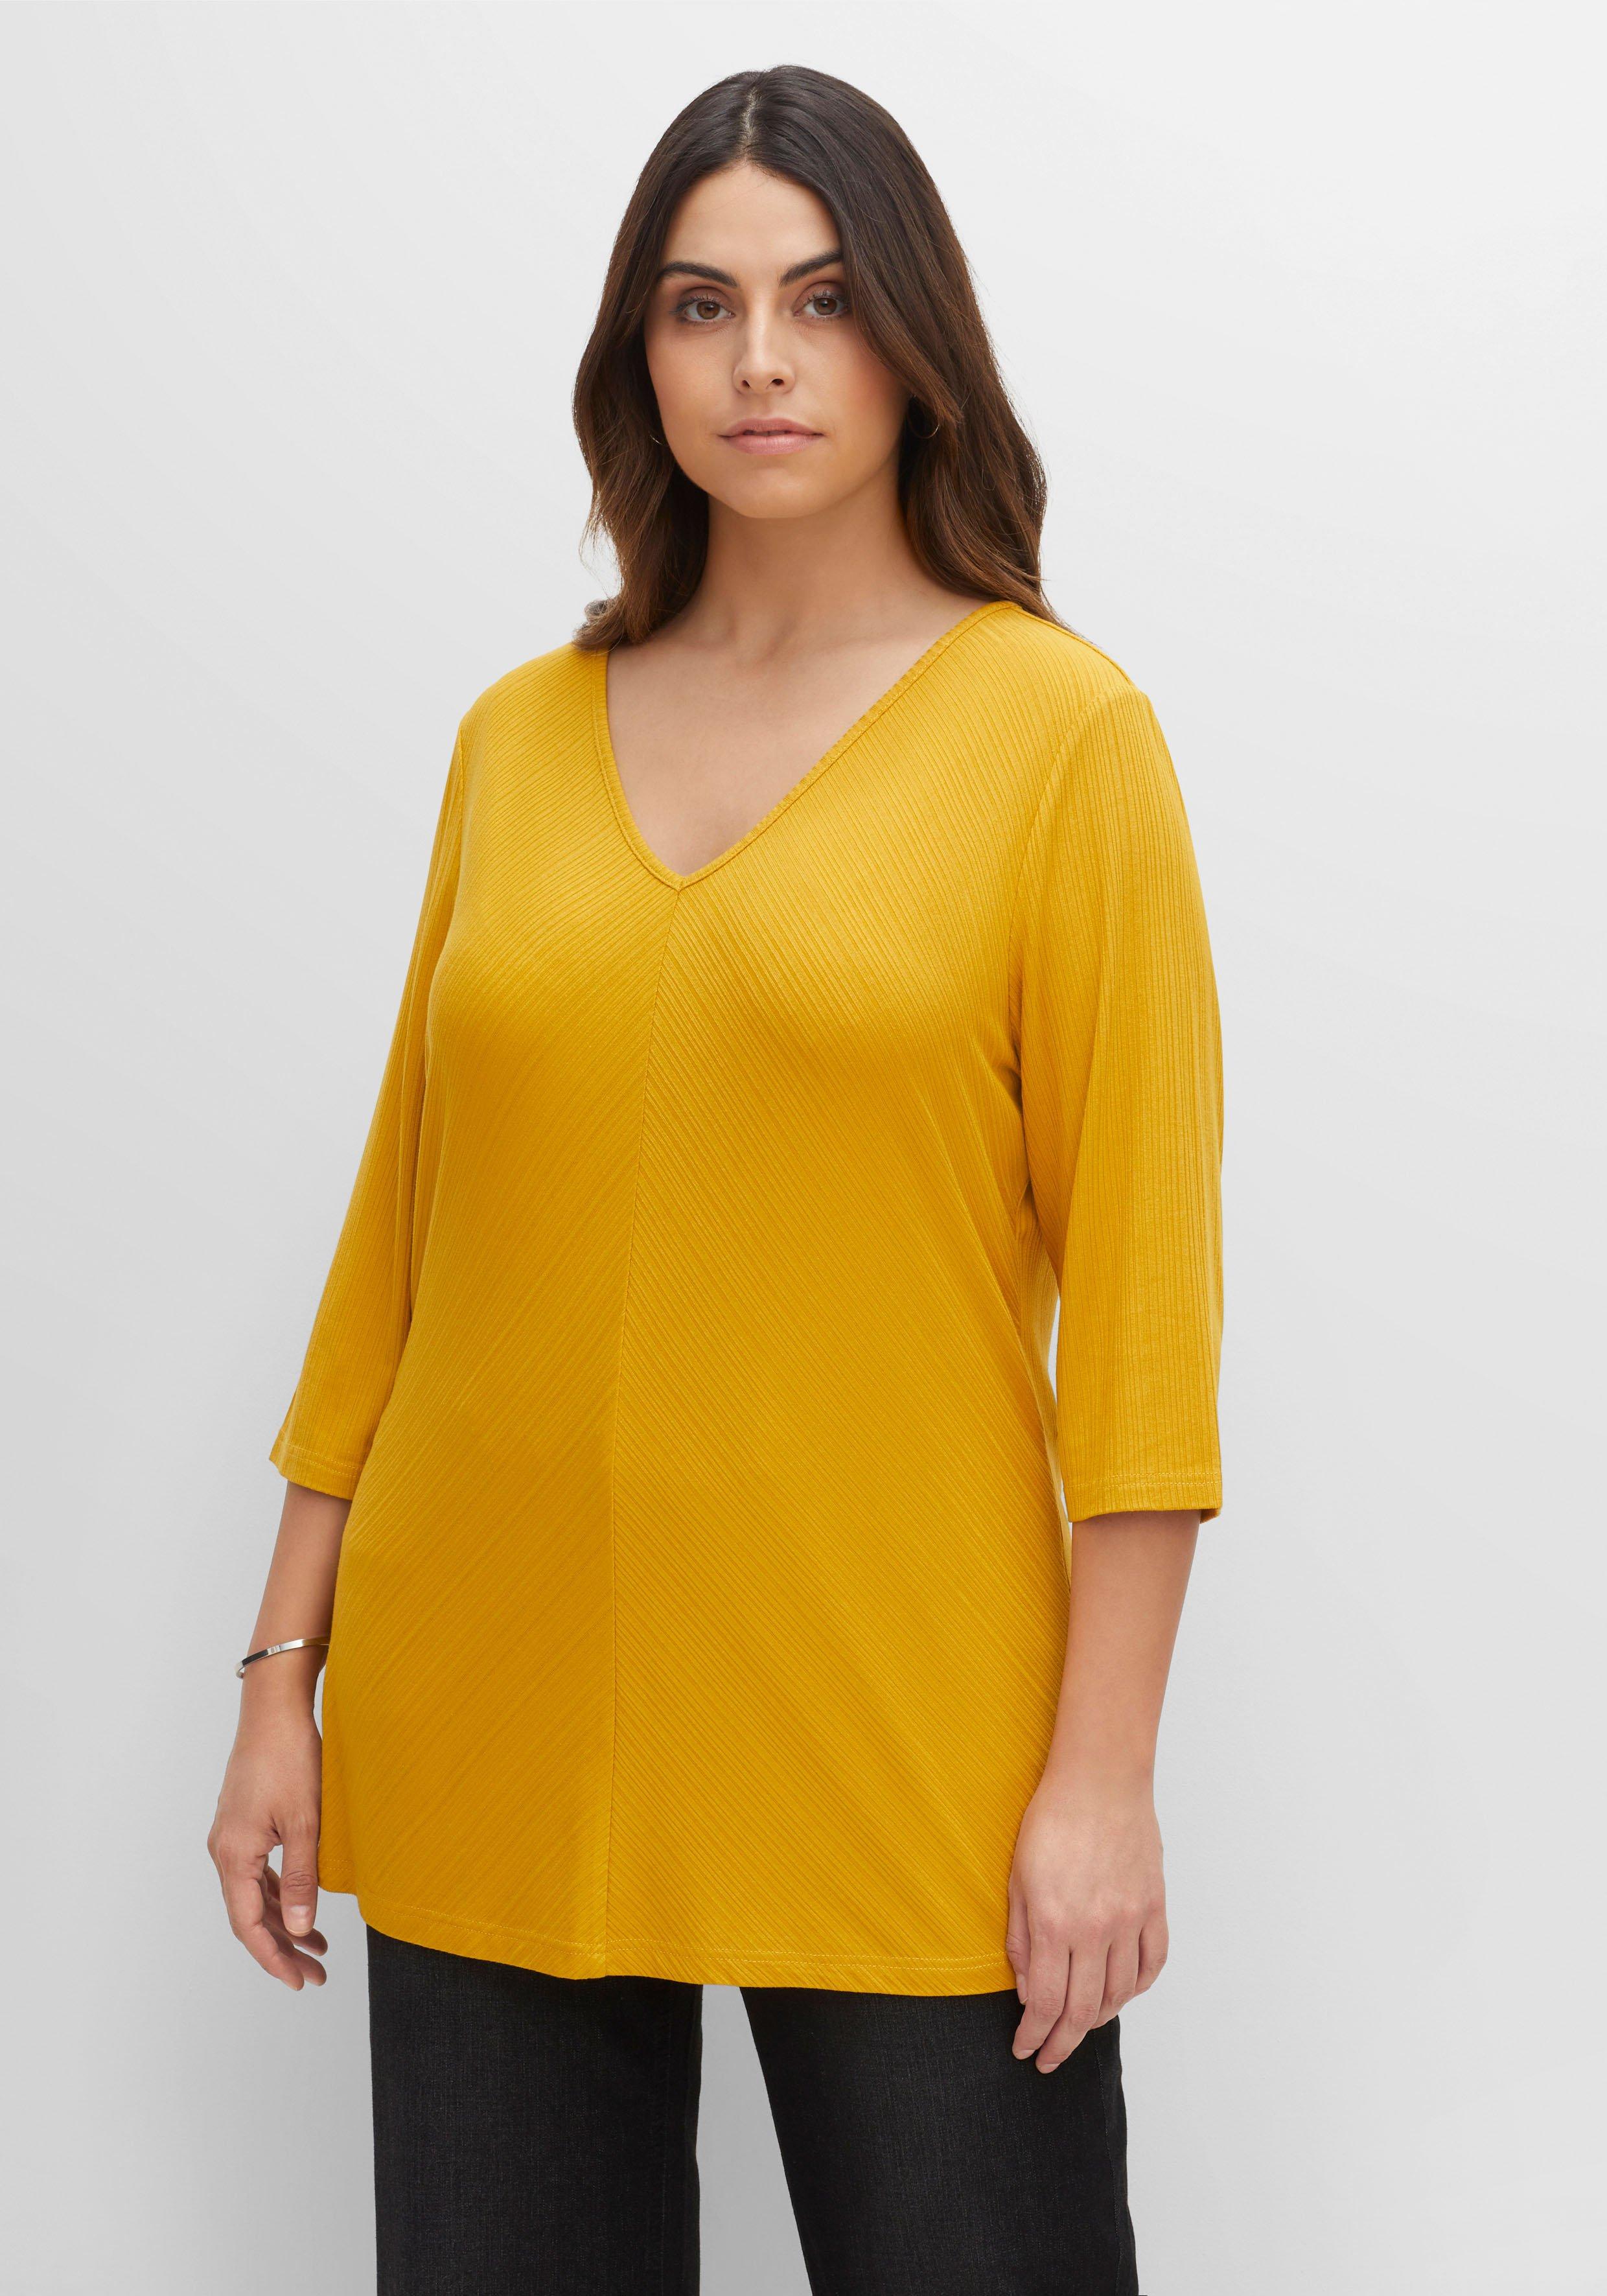 Shirts große Größen gelb | sheego ♥ Plus Size Mode